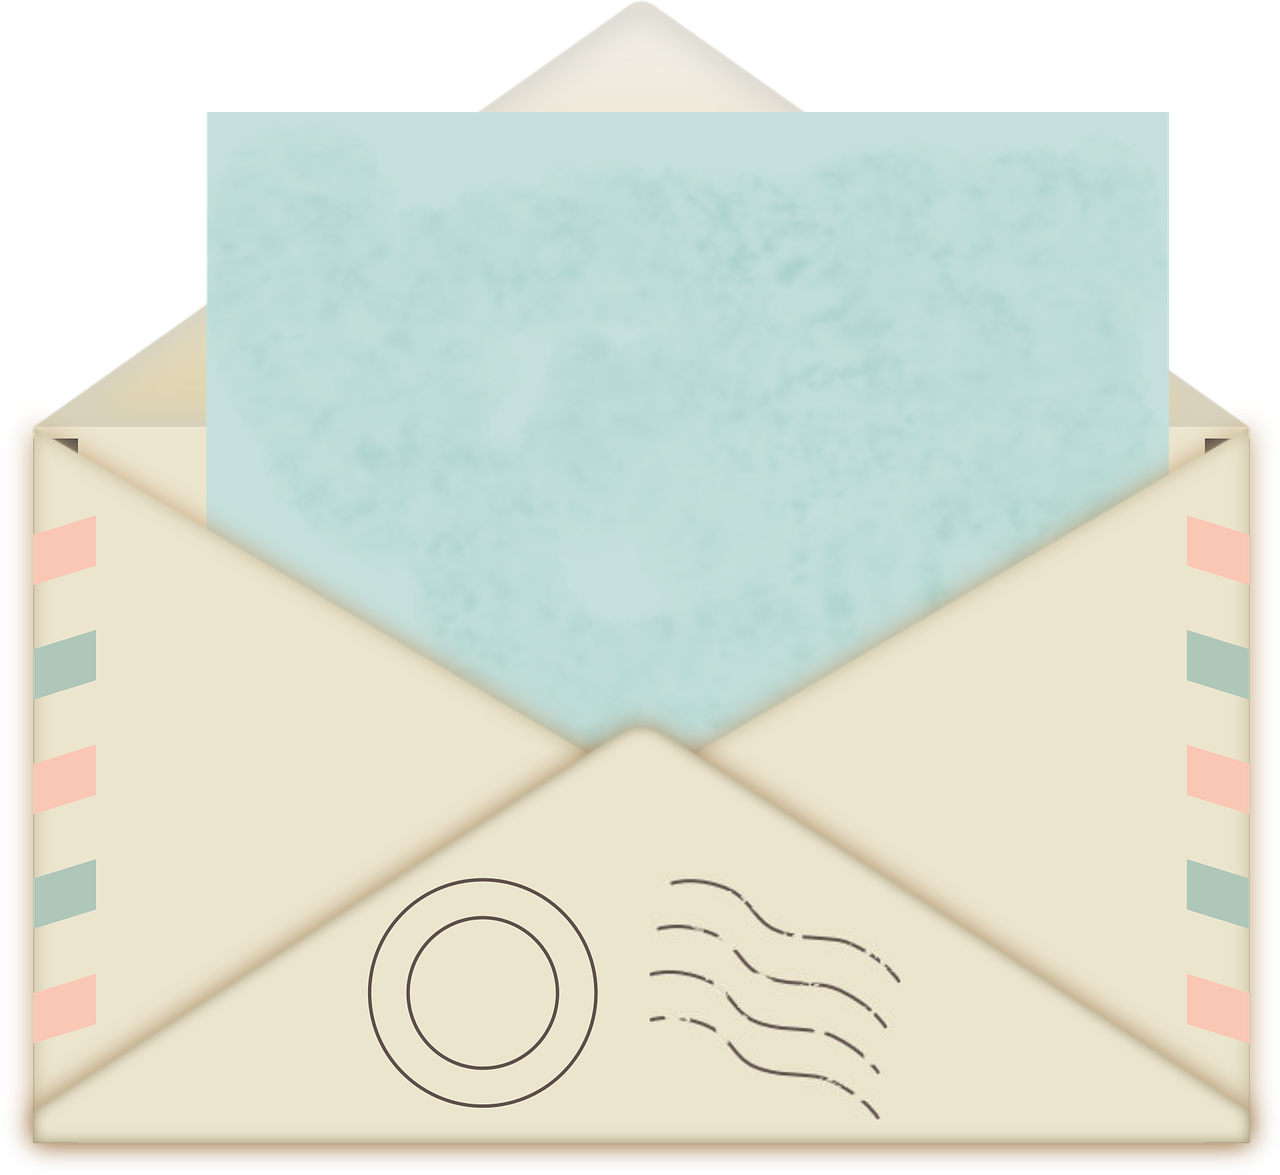 https://pixabay.com/en/envelope-mail-postage-post-office-3172770/